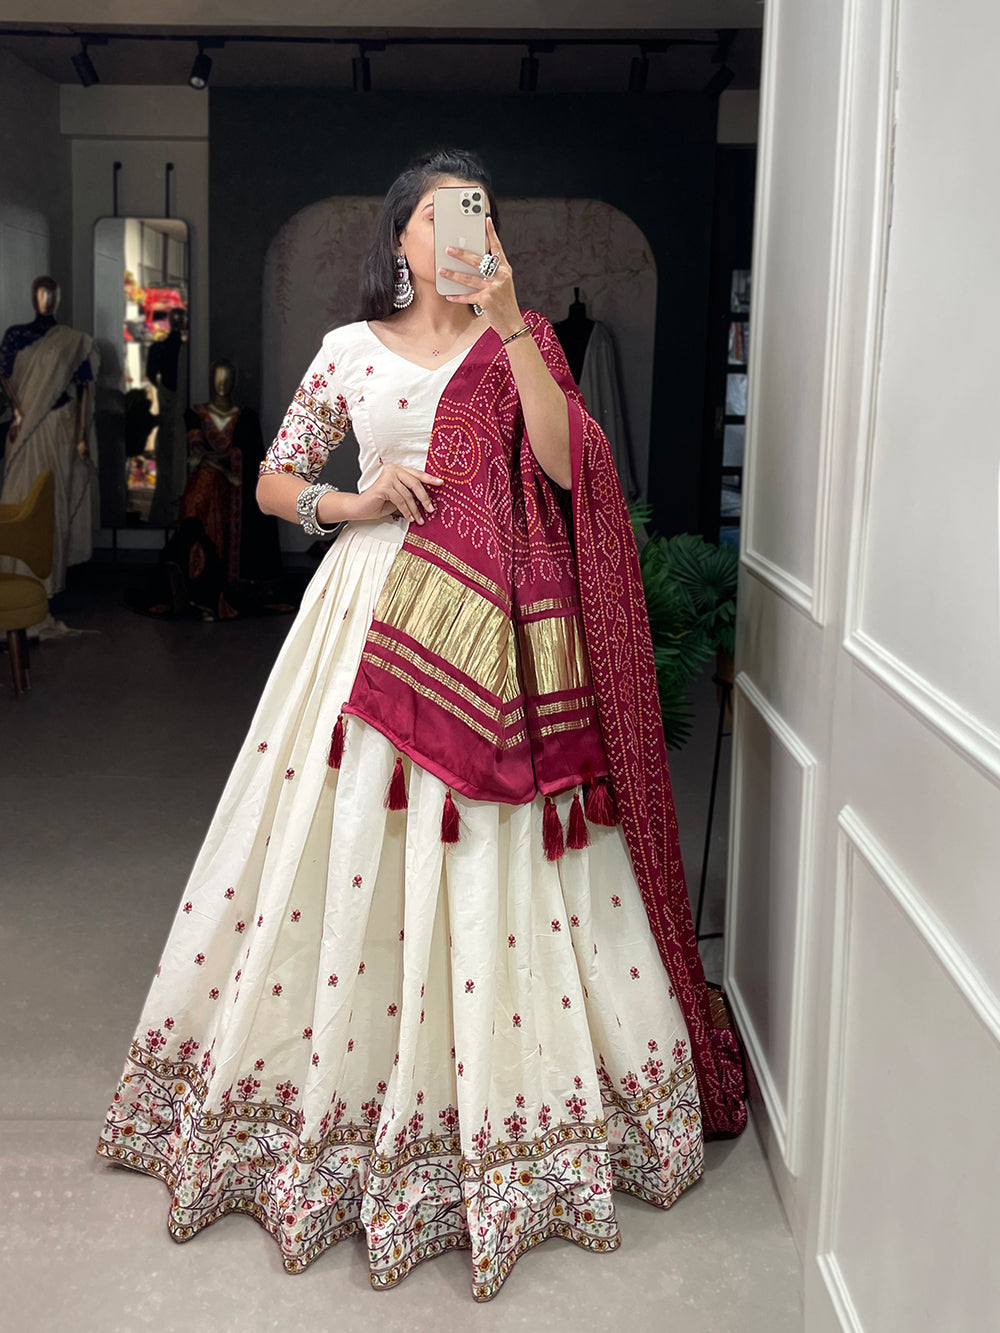 2 Tone Maroon Bridal Lehenga, Boutique, London, UK | White indian wedding  dress, Bridal outfits, Indian wedding wear